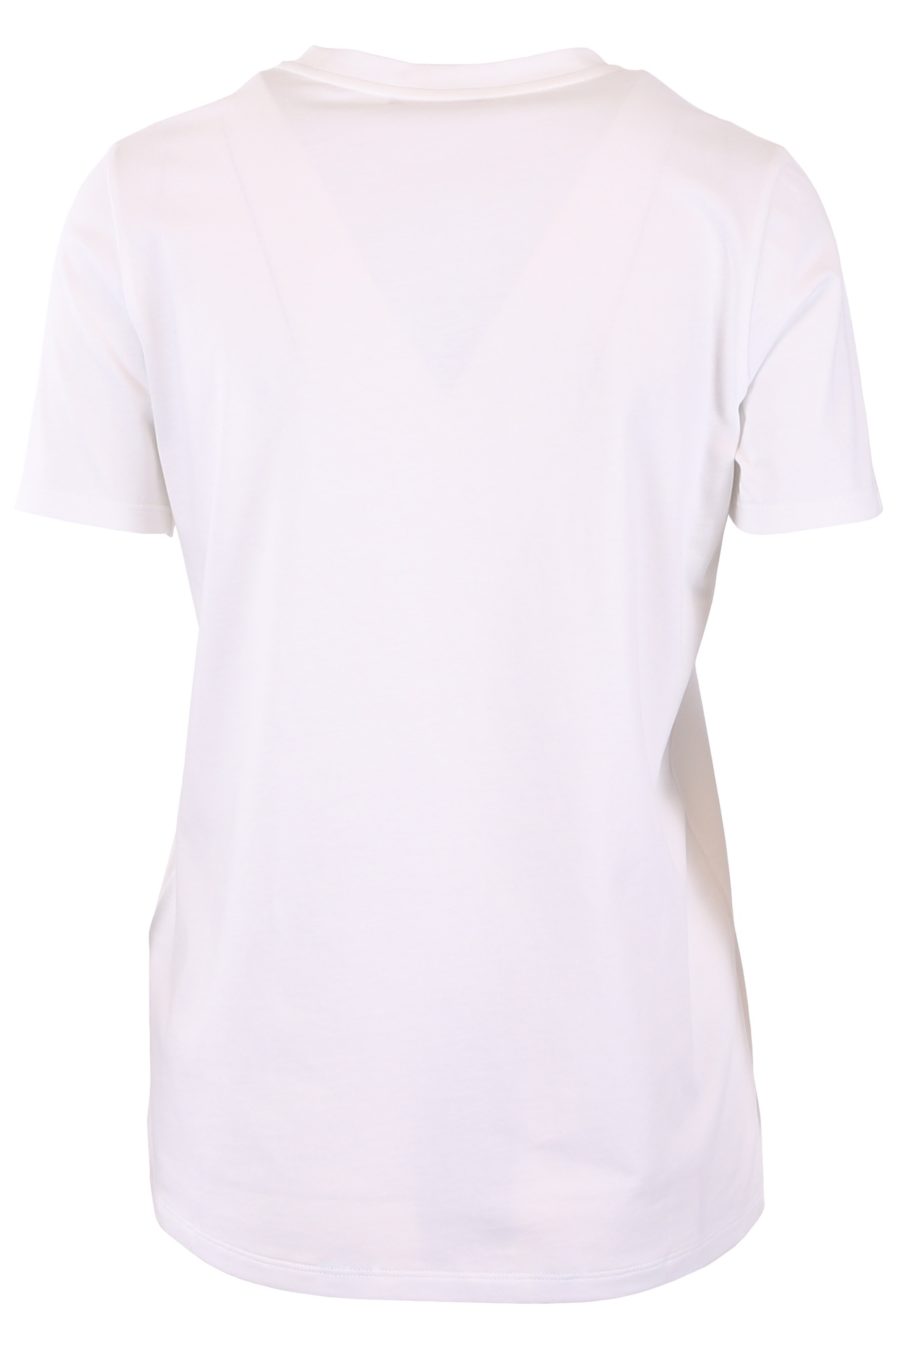 Balmain T-shirt blanc avec logo noir - 6b8ae18f062637f3165b6f4f5236b7c042ab6943